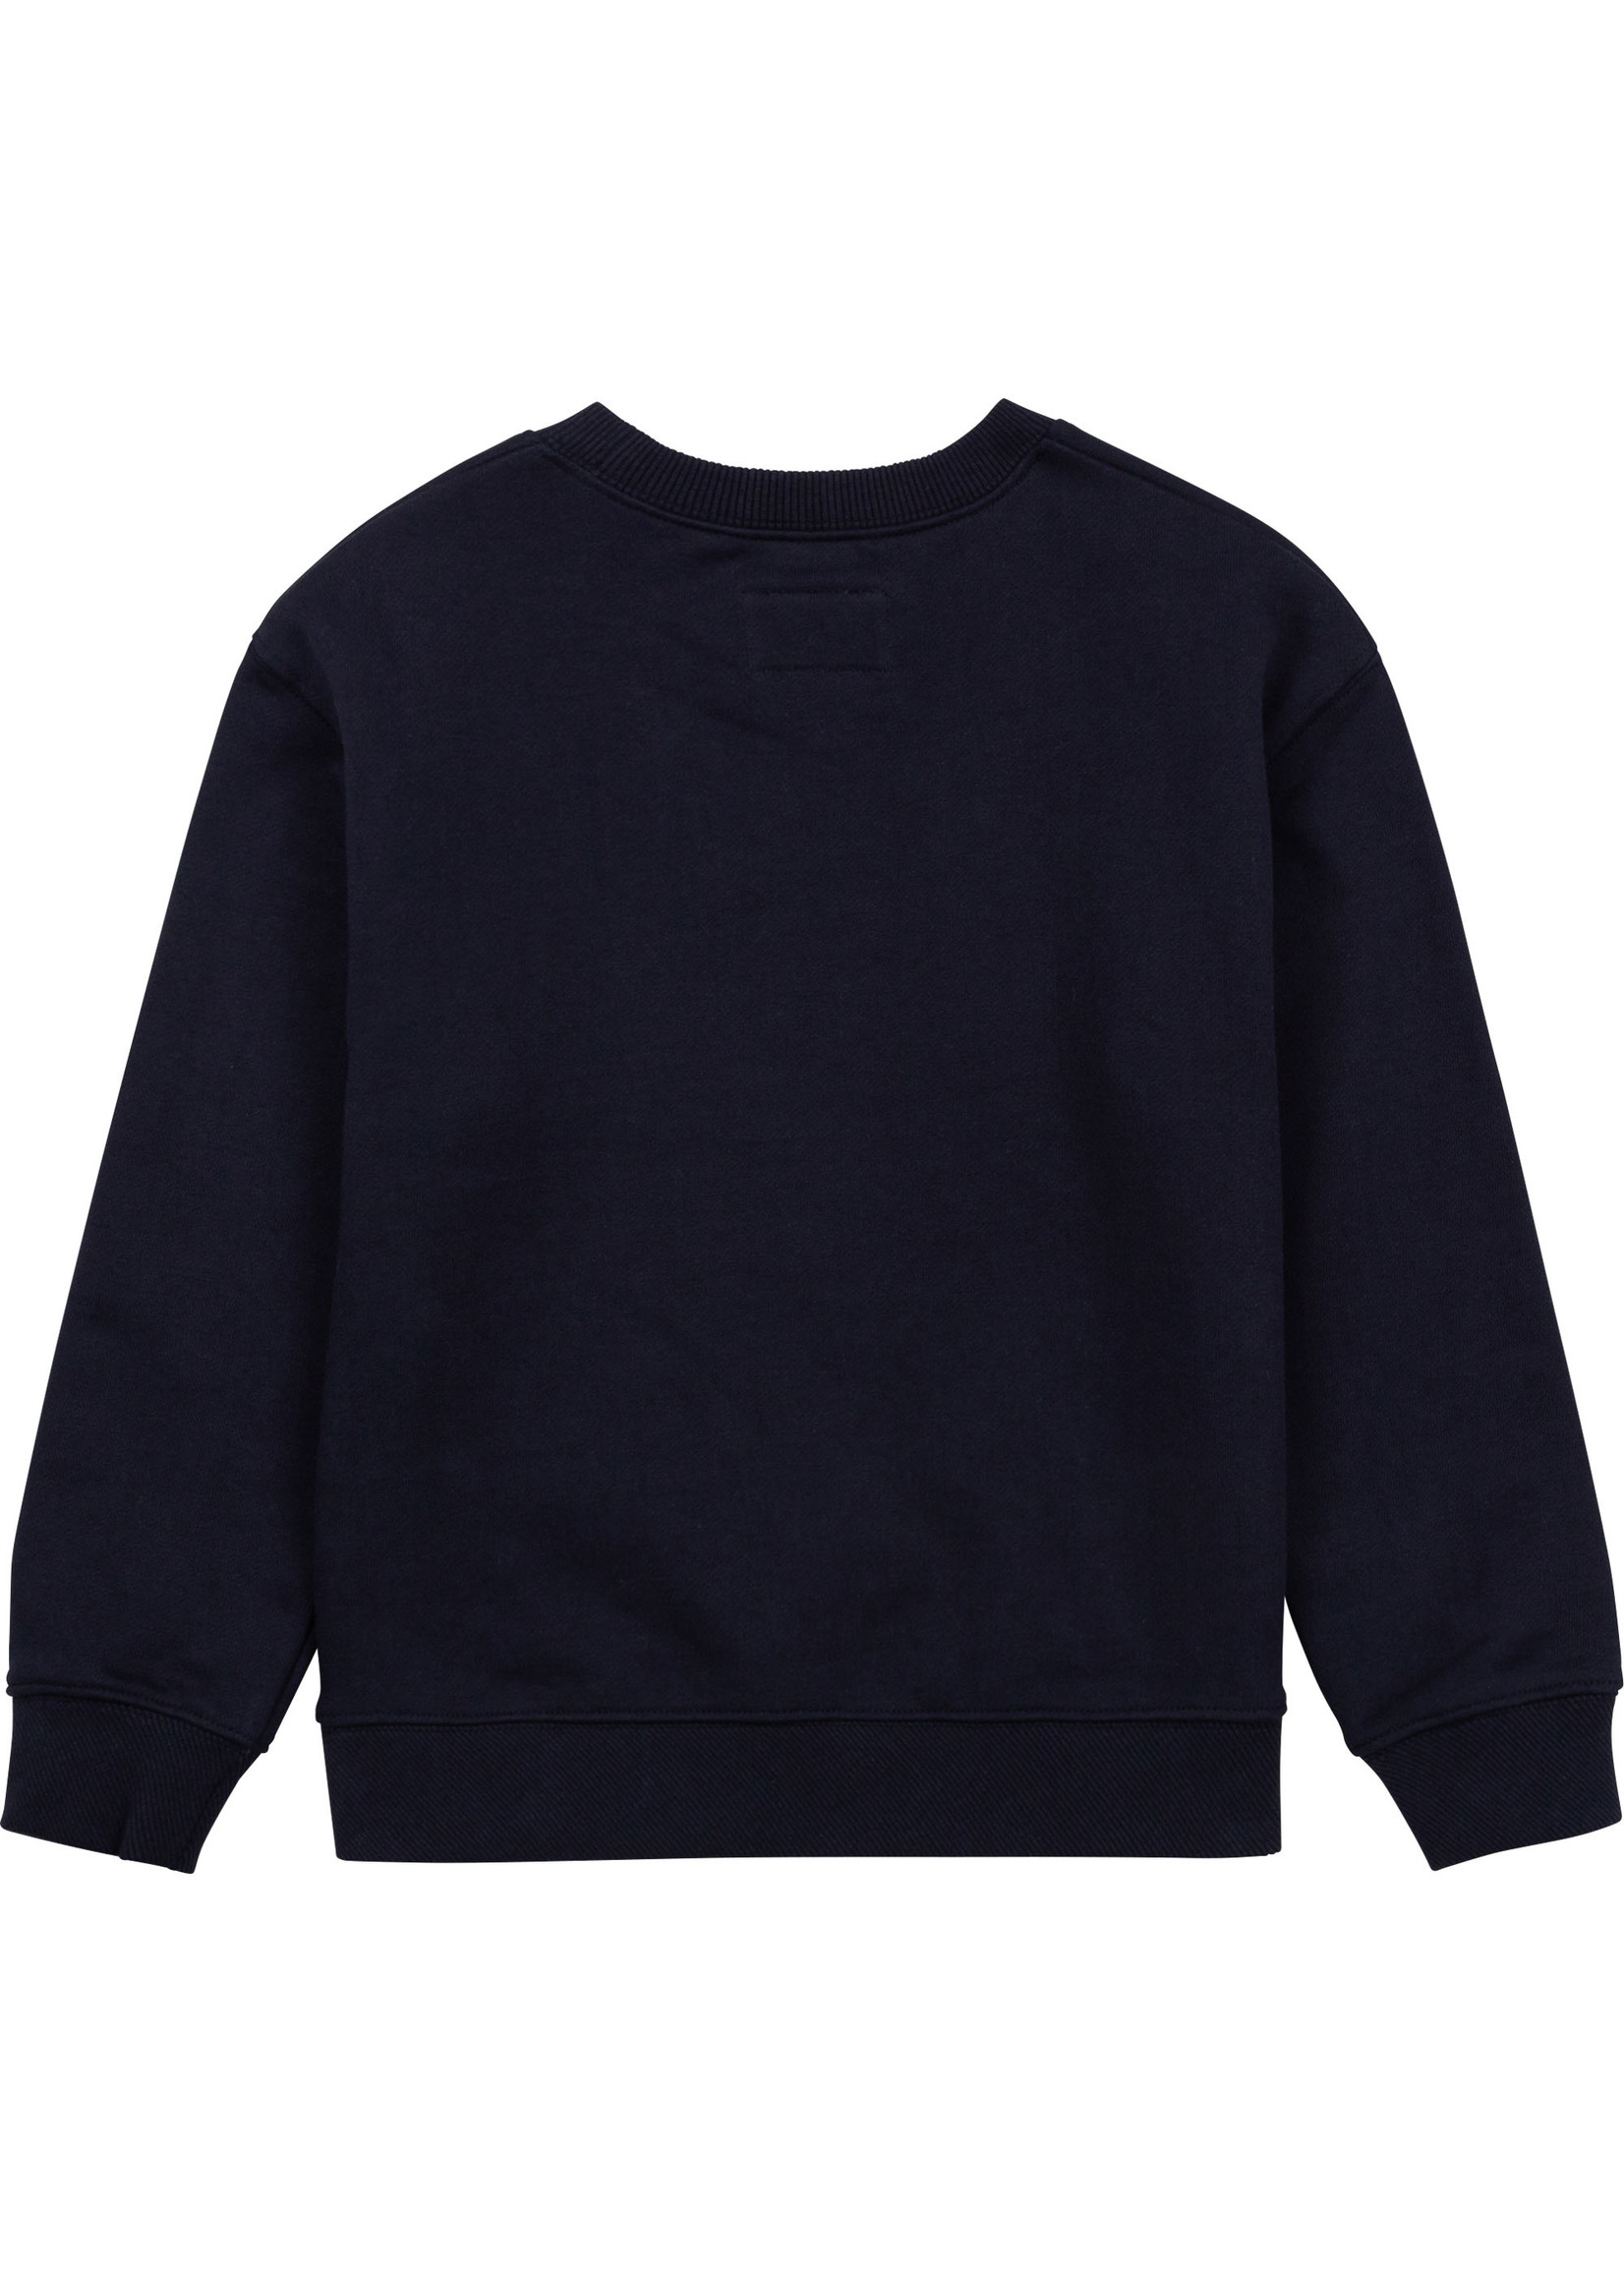 Zadig & Voltaire ZADIG&VOLTAIRE Sweater navy - X25274